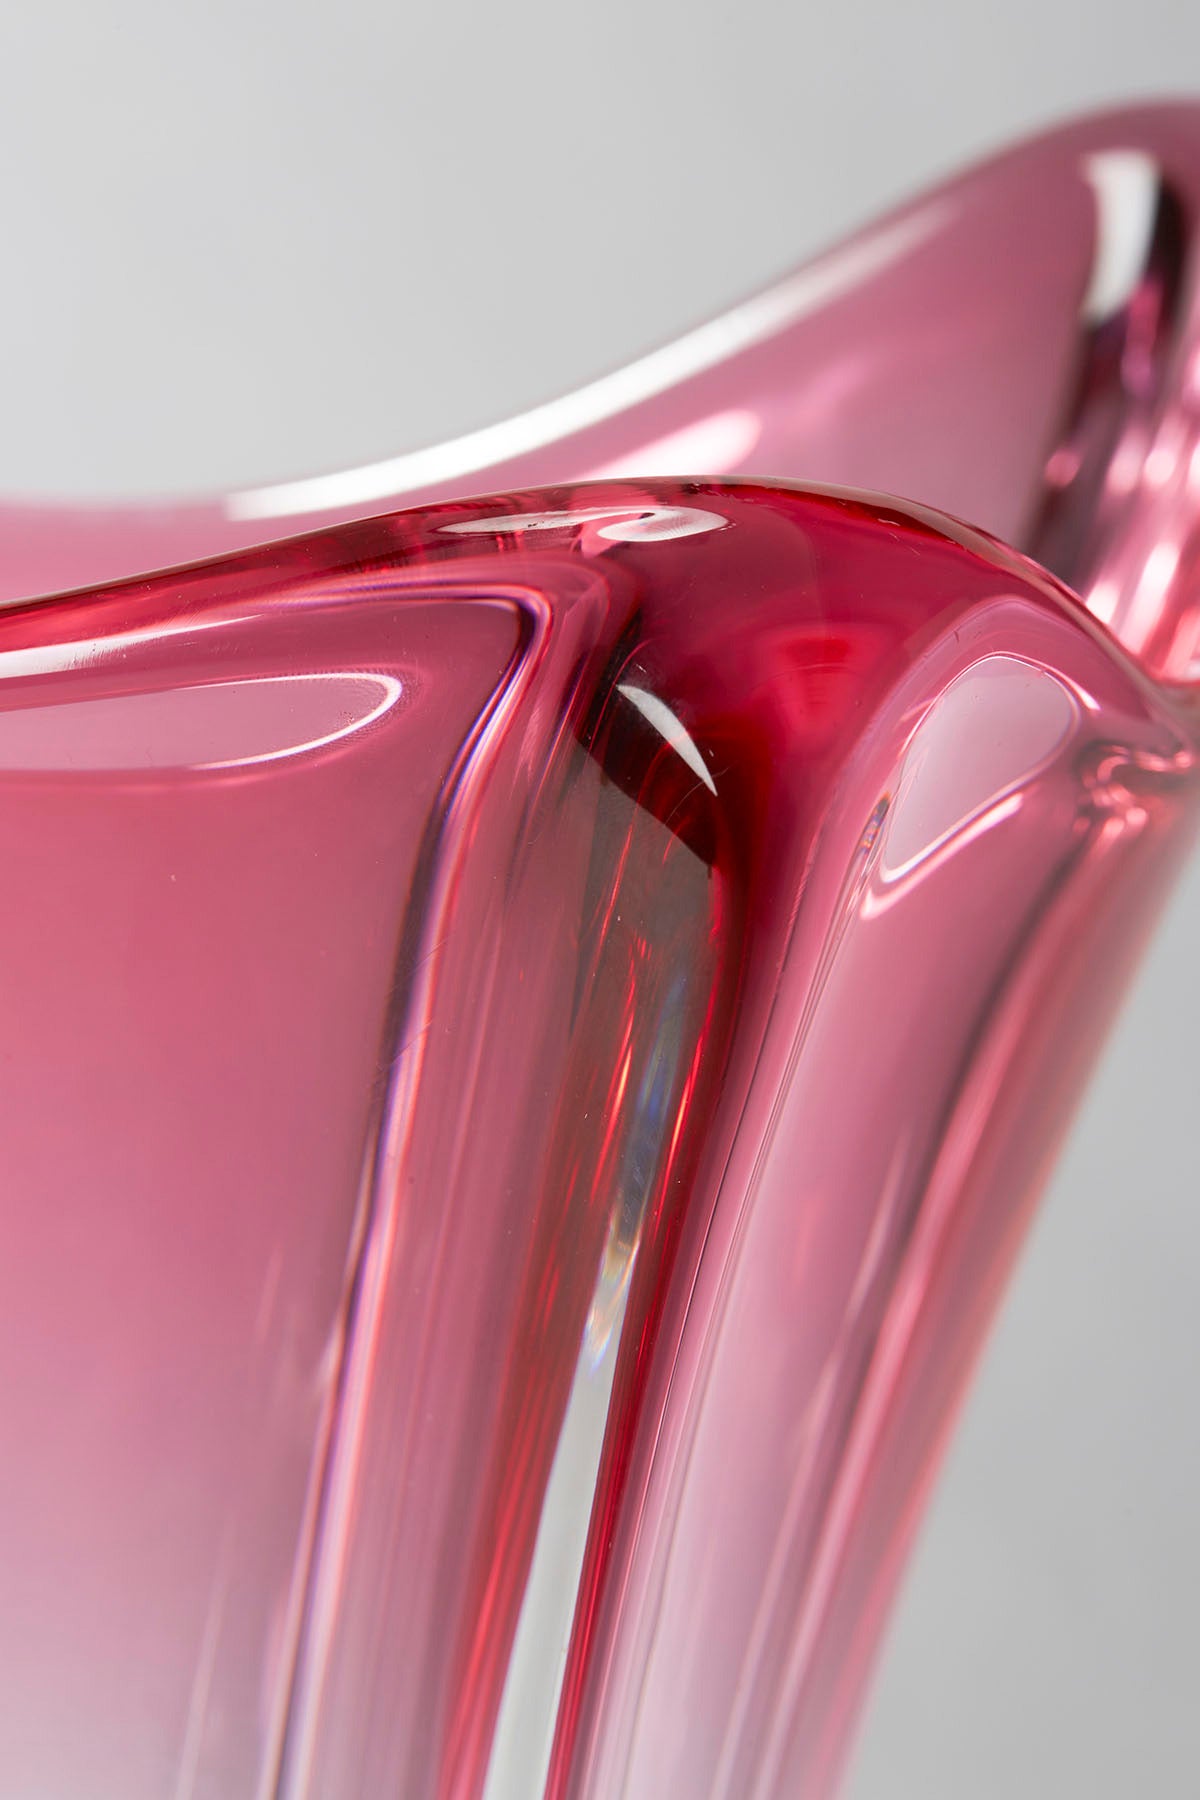 Belgian Val Saint Lambert Art Glass Vase, Signed